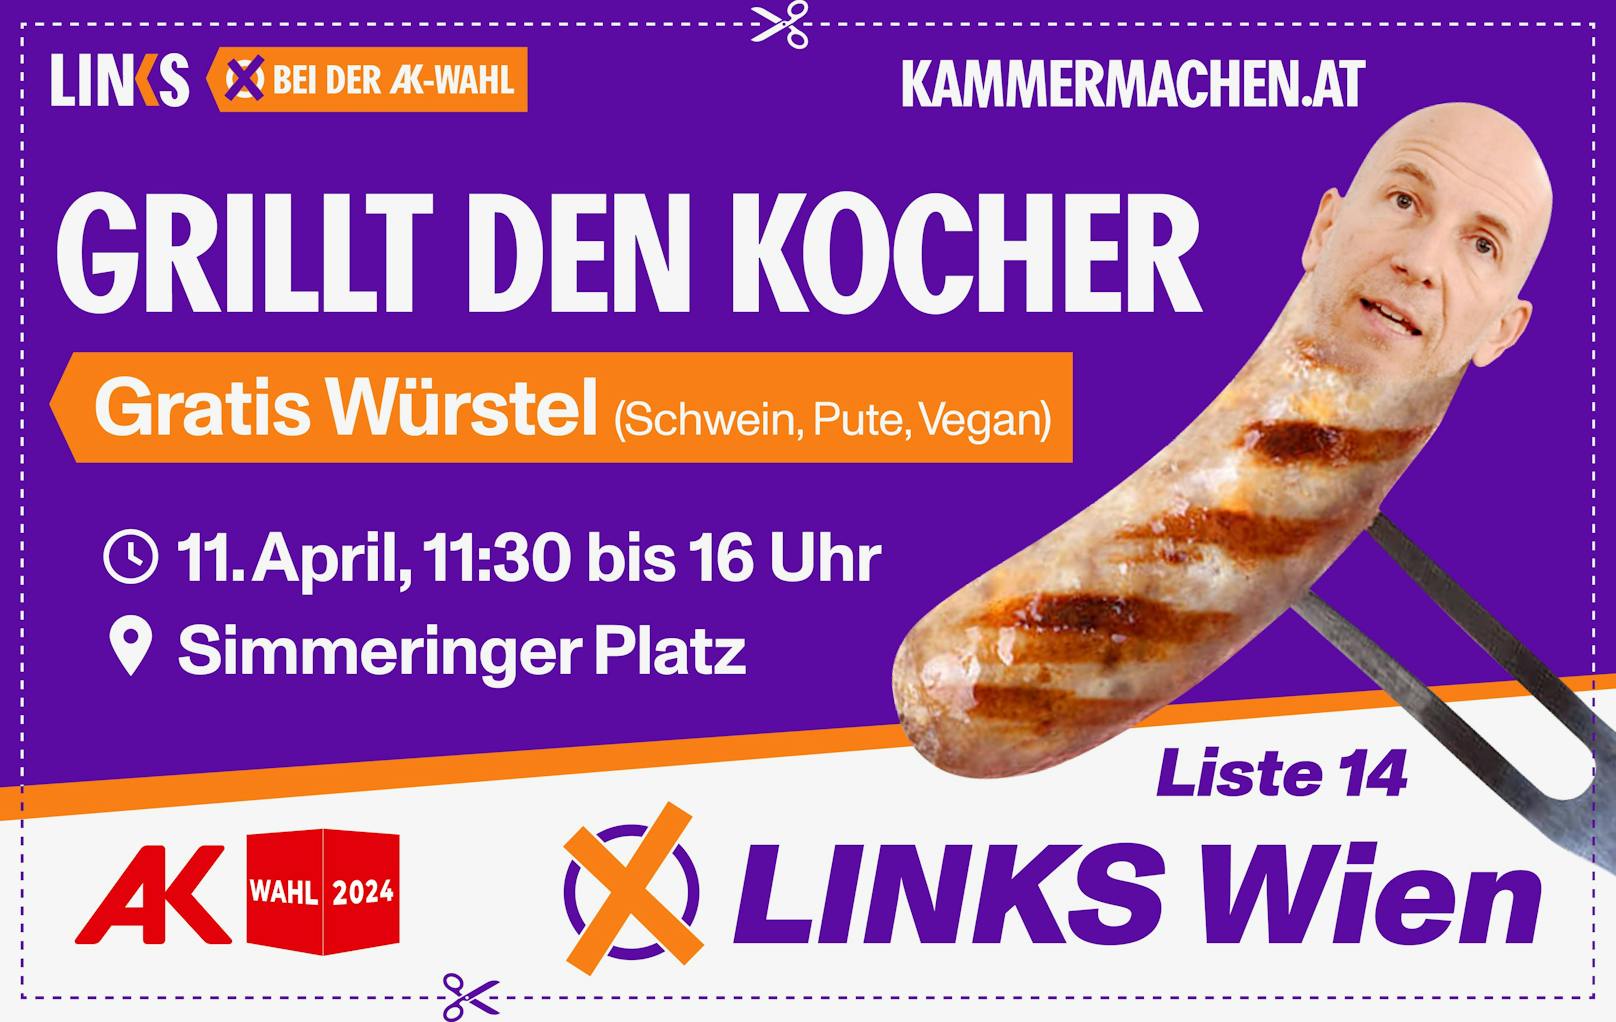 LINKS-Spitzenkandidat Florian Rath will mit gratis Würstel für alle Arbeitsminister Martin Kocher (VP) grillen.